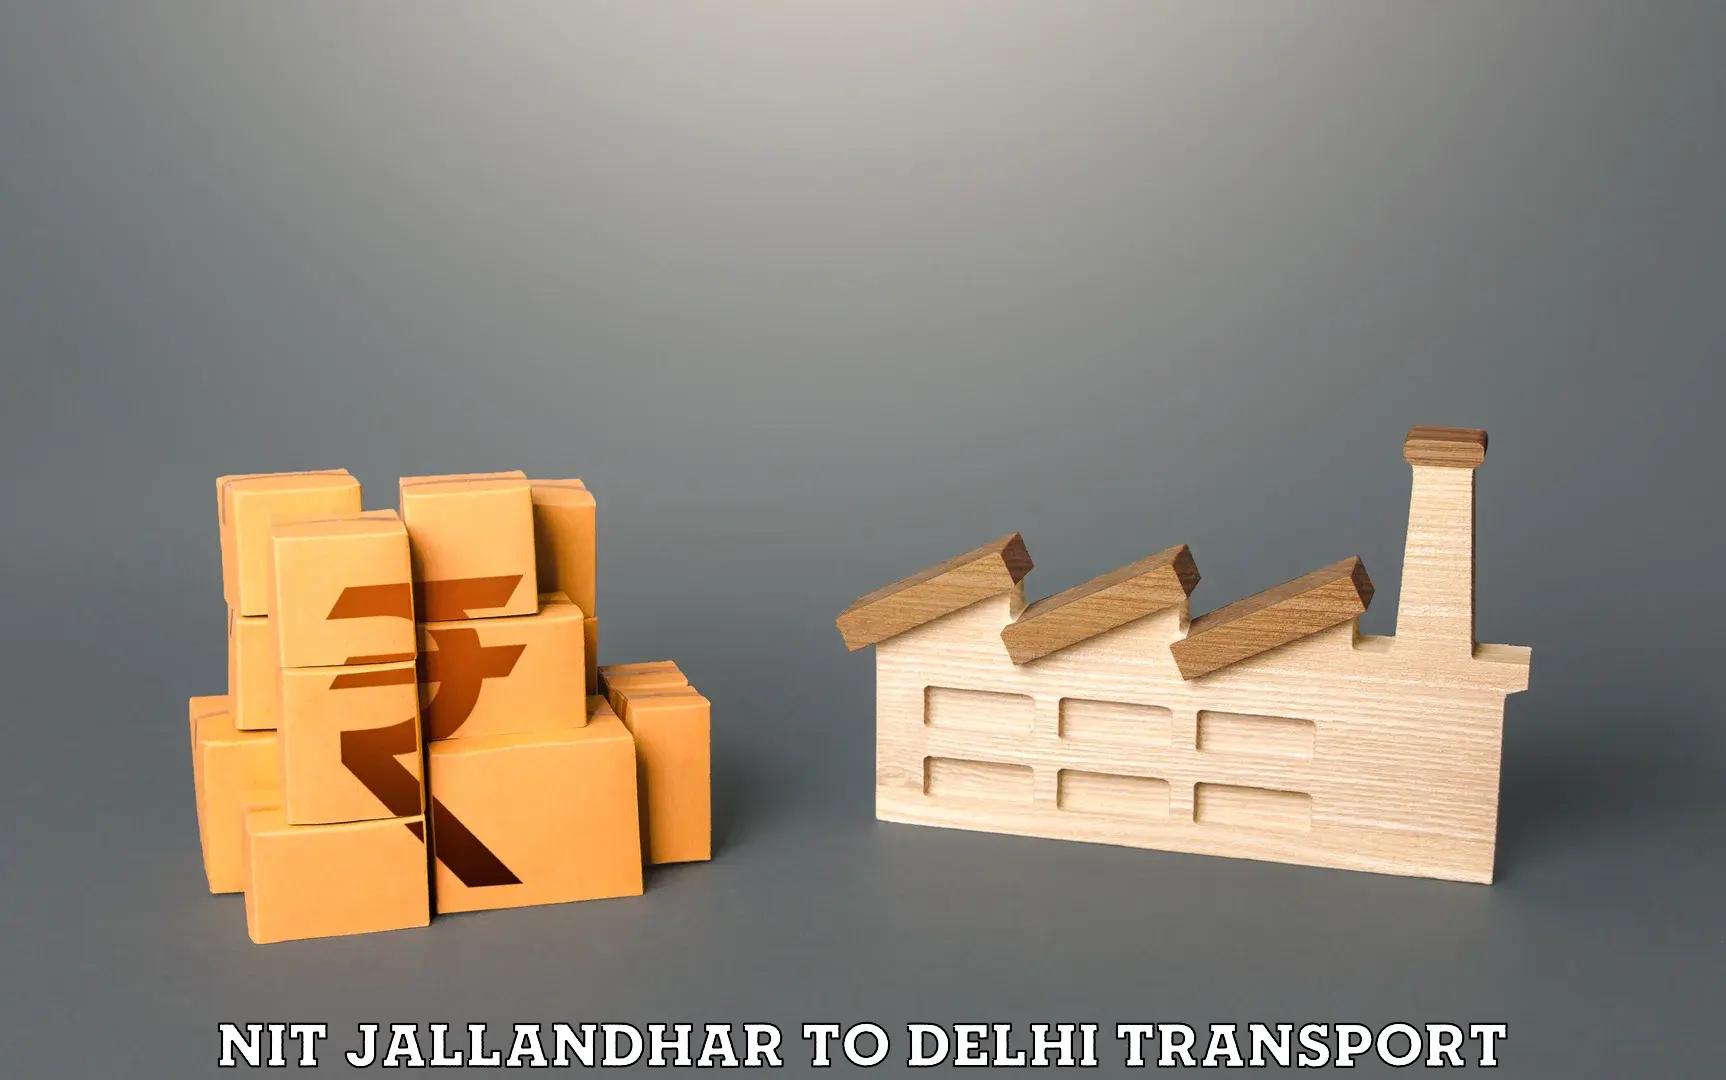 Pick up transport service NIT Jallandhar to Delhi